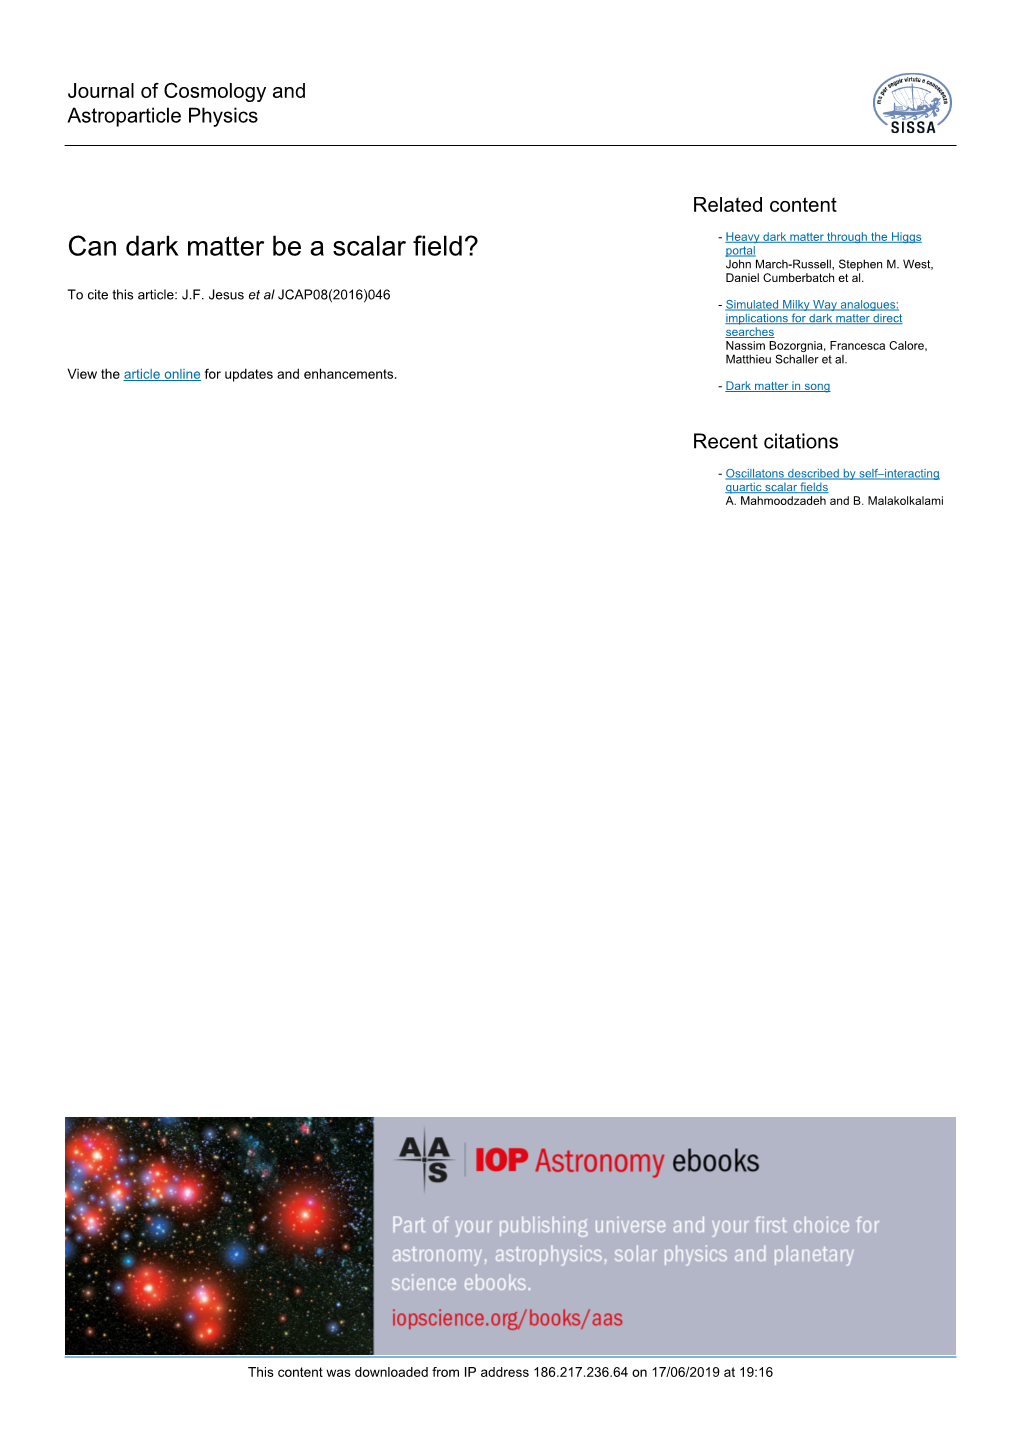 Can Dark Matter Be a Scalar Field? Portal John March-Russell, Stephen M